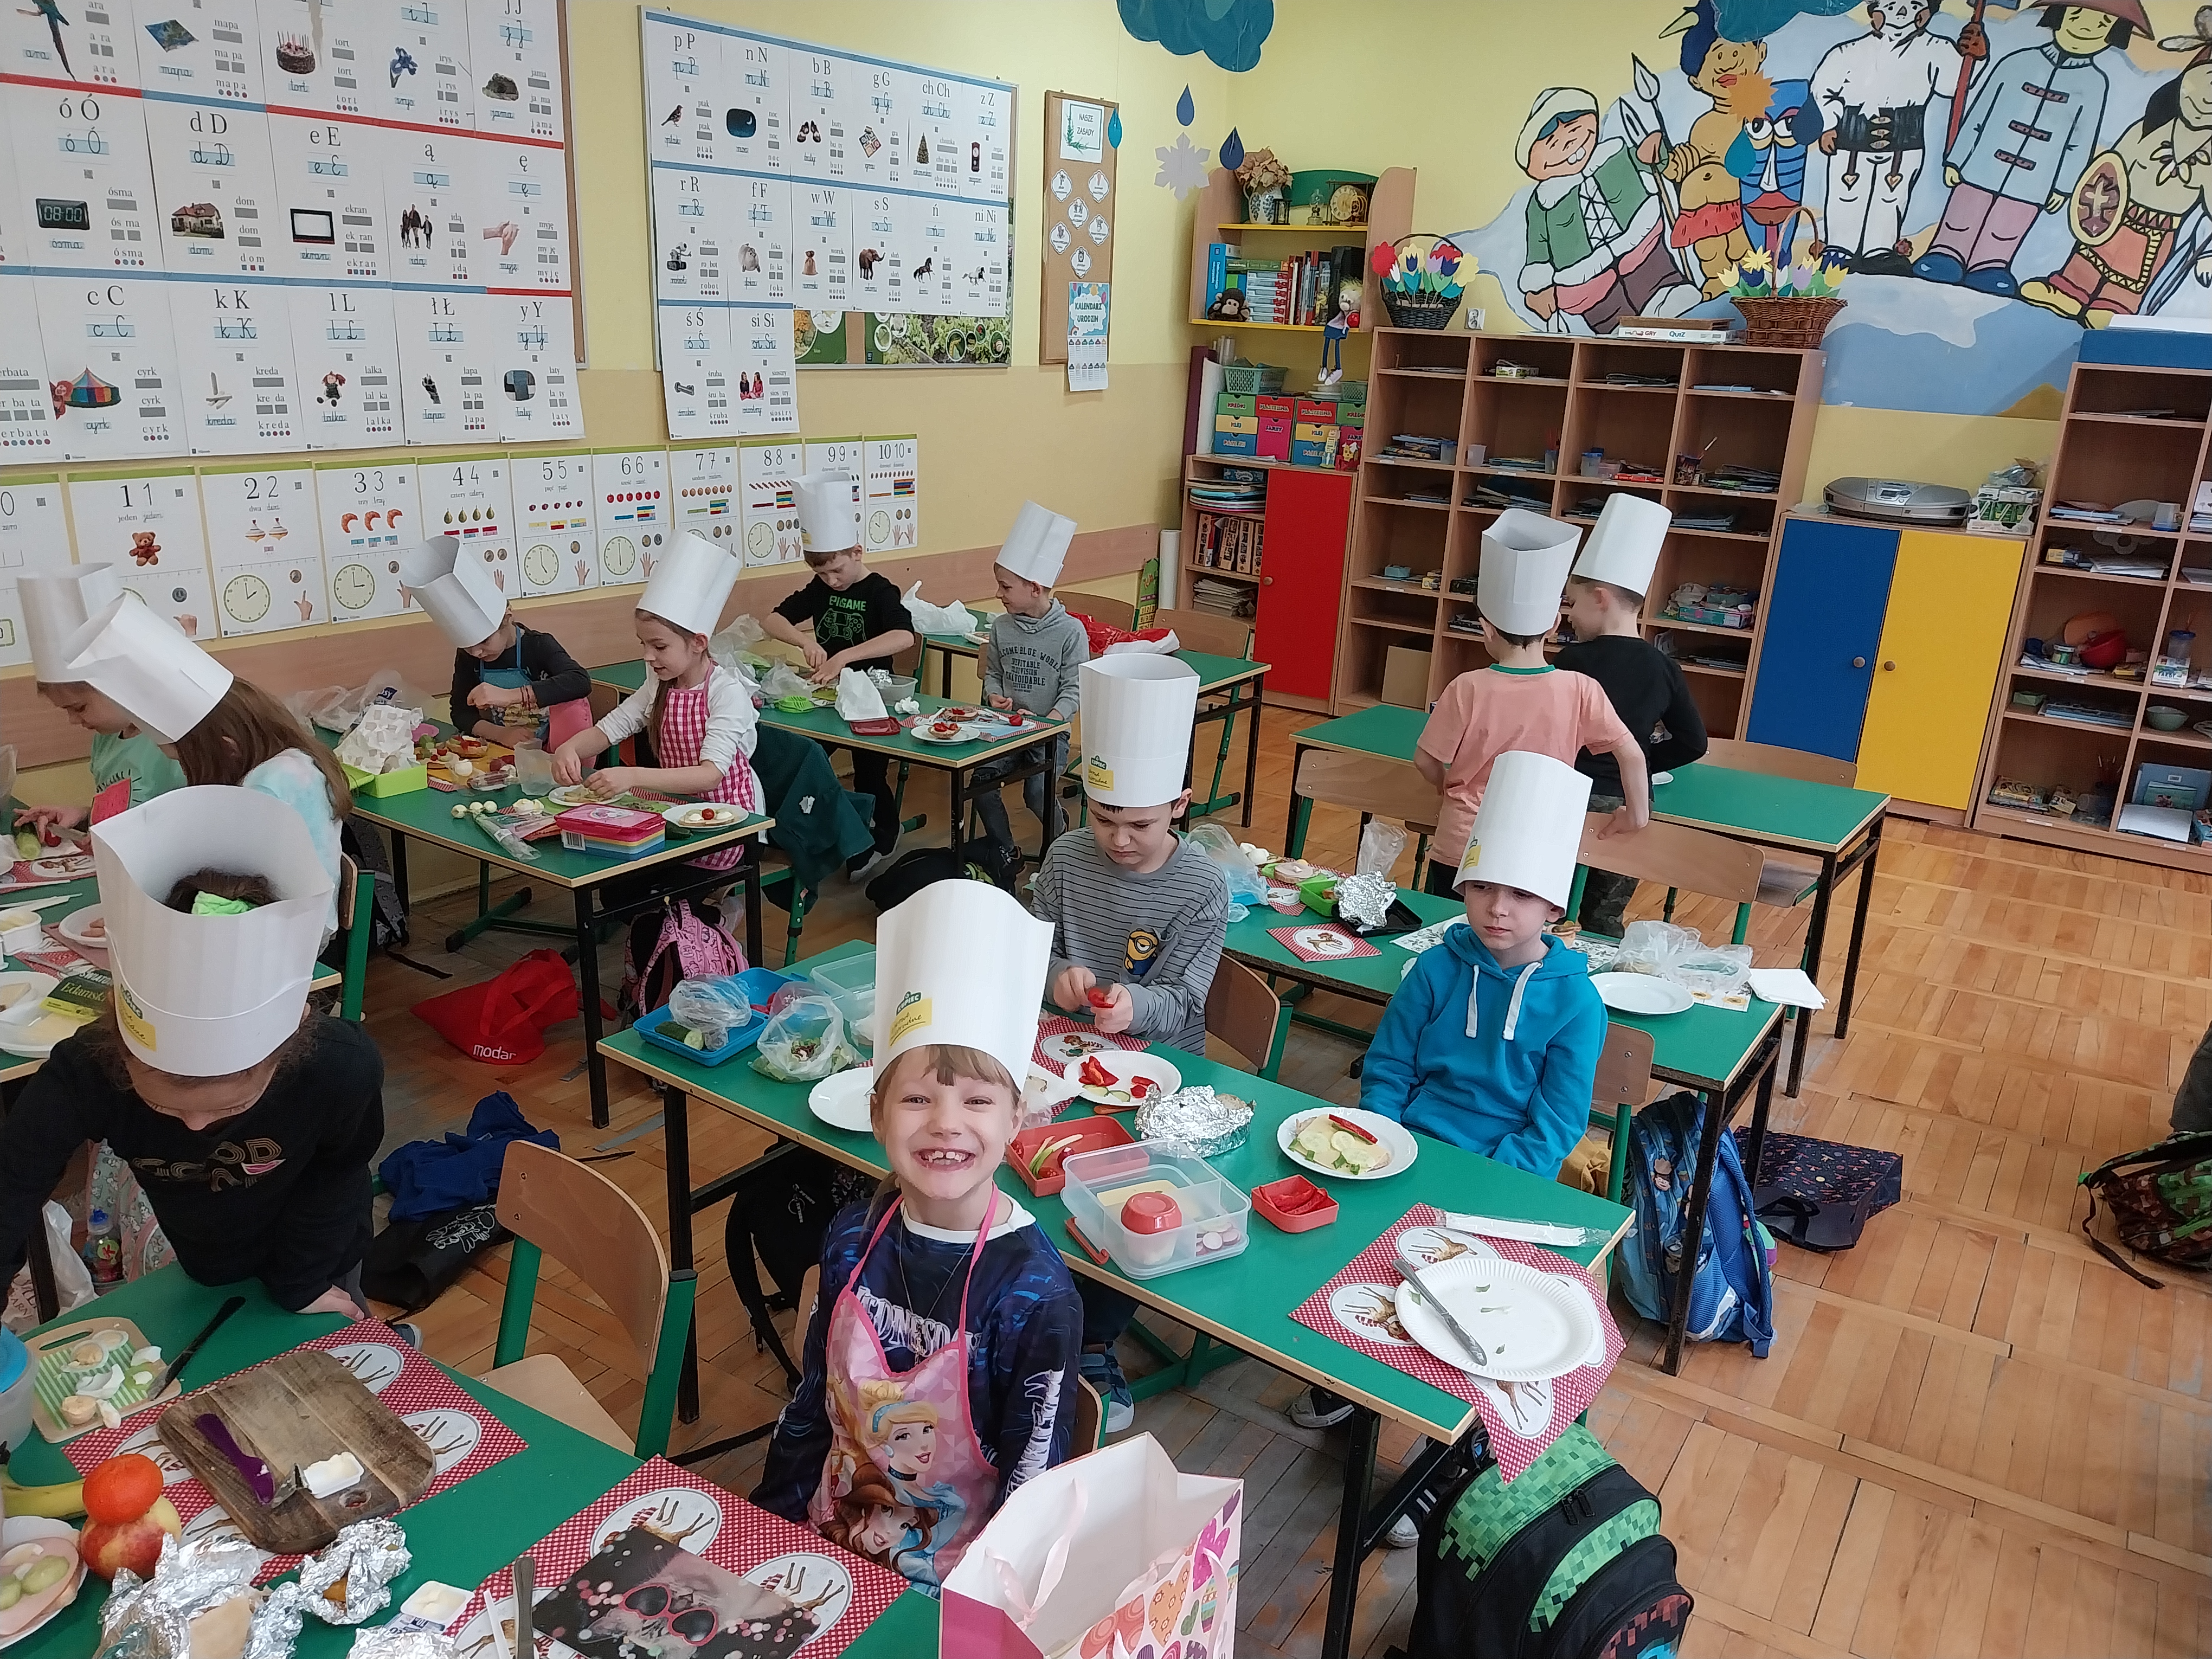 Dzieci w czapkach kucharskich przygotowują posiłek w sali lekcyjnej